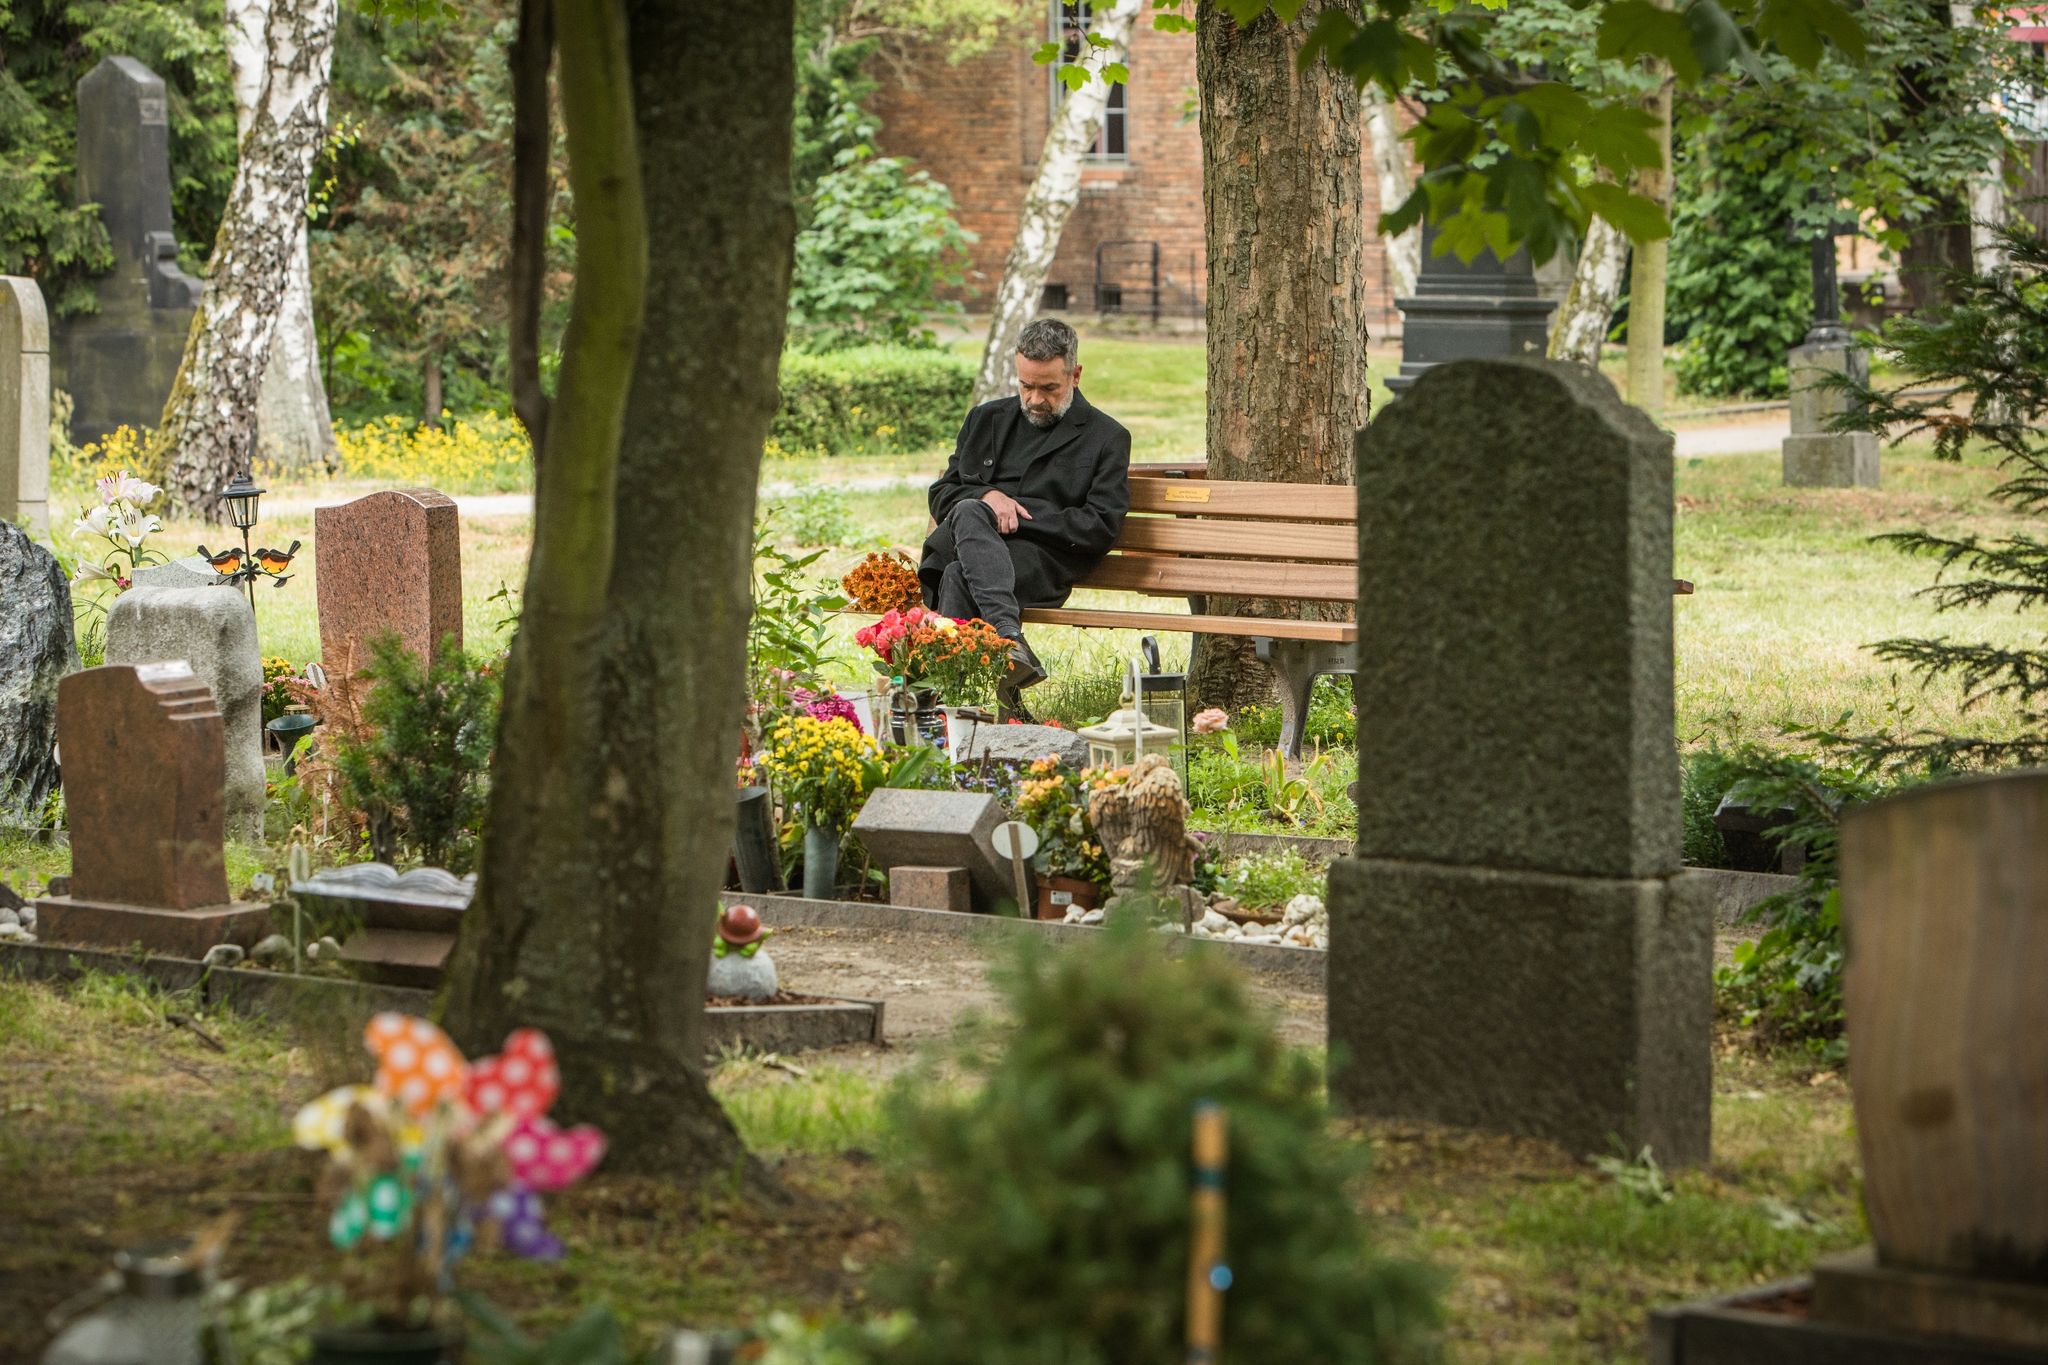 Einige meiden den Friedhof mit dem Grab des geliebten Menschen komplett, andere verbringen dort sehr viel Zeit: Eine anhaltende Trauerstörung kann sich ganz unterschiedlich ausdrücken.